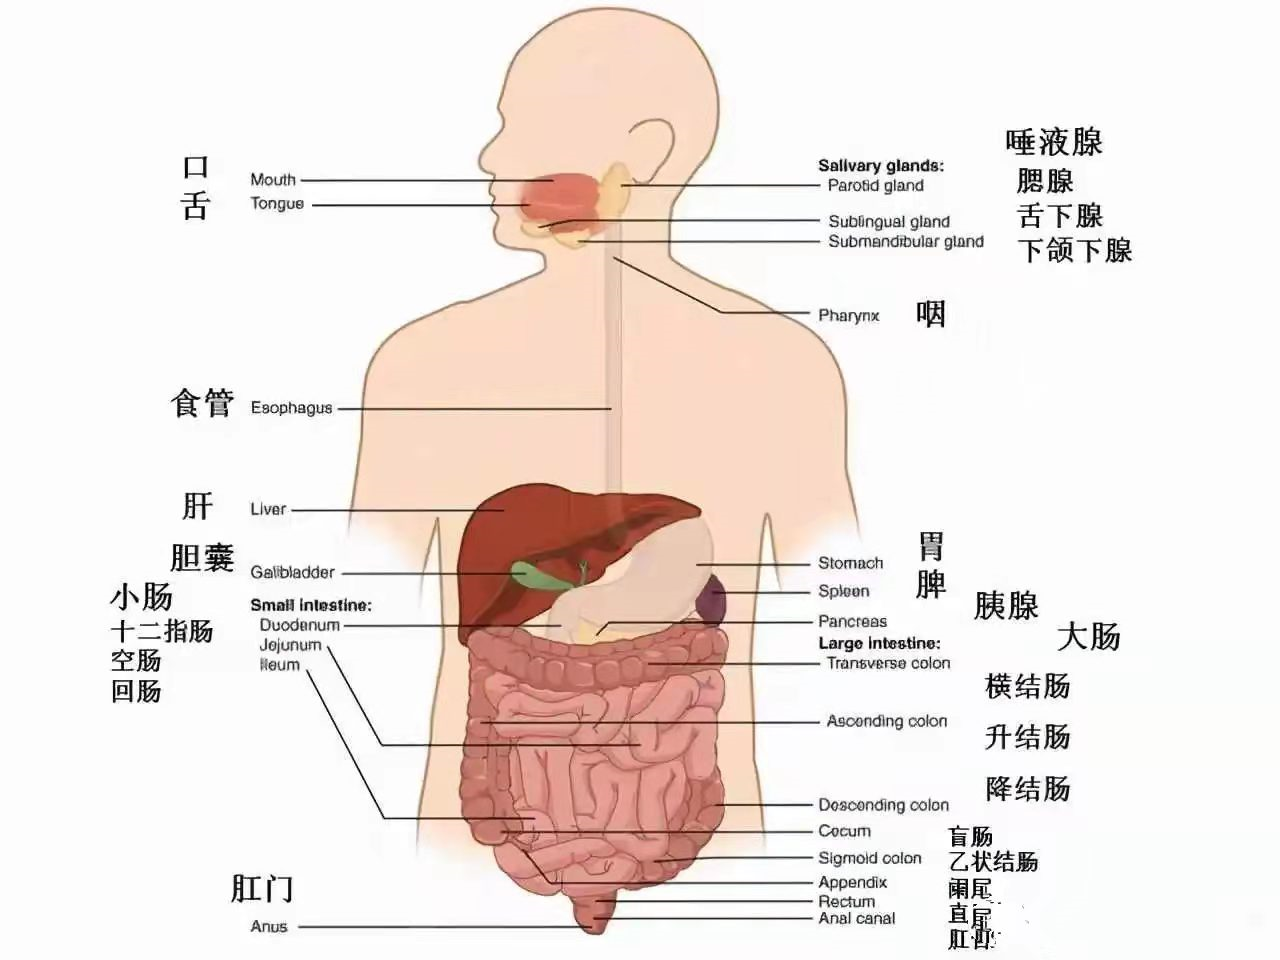 在人体的左边:左上腹位置,有脾,胃,和结肠脾曲以及左肾和左肾上腺等